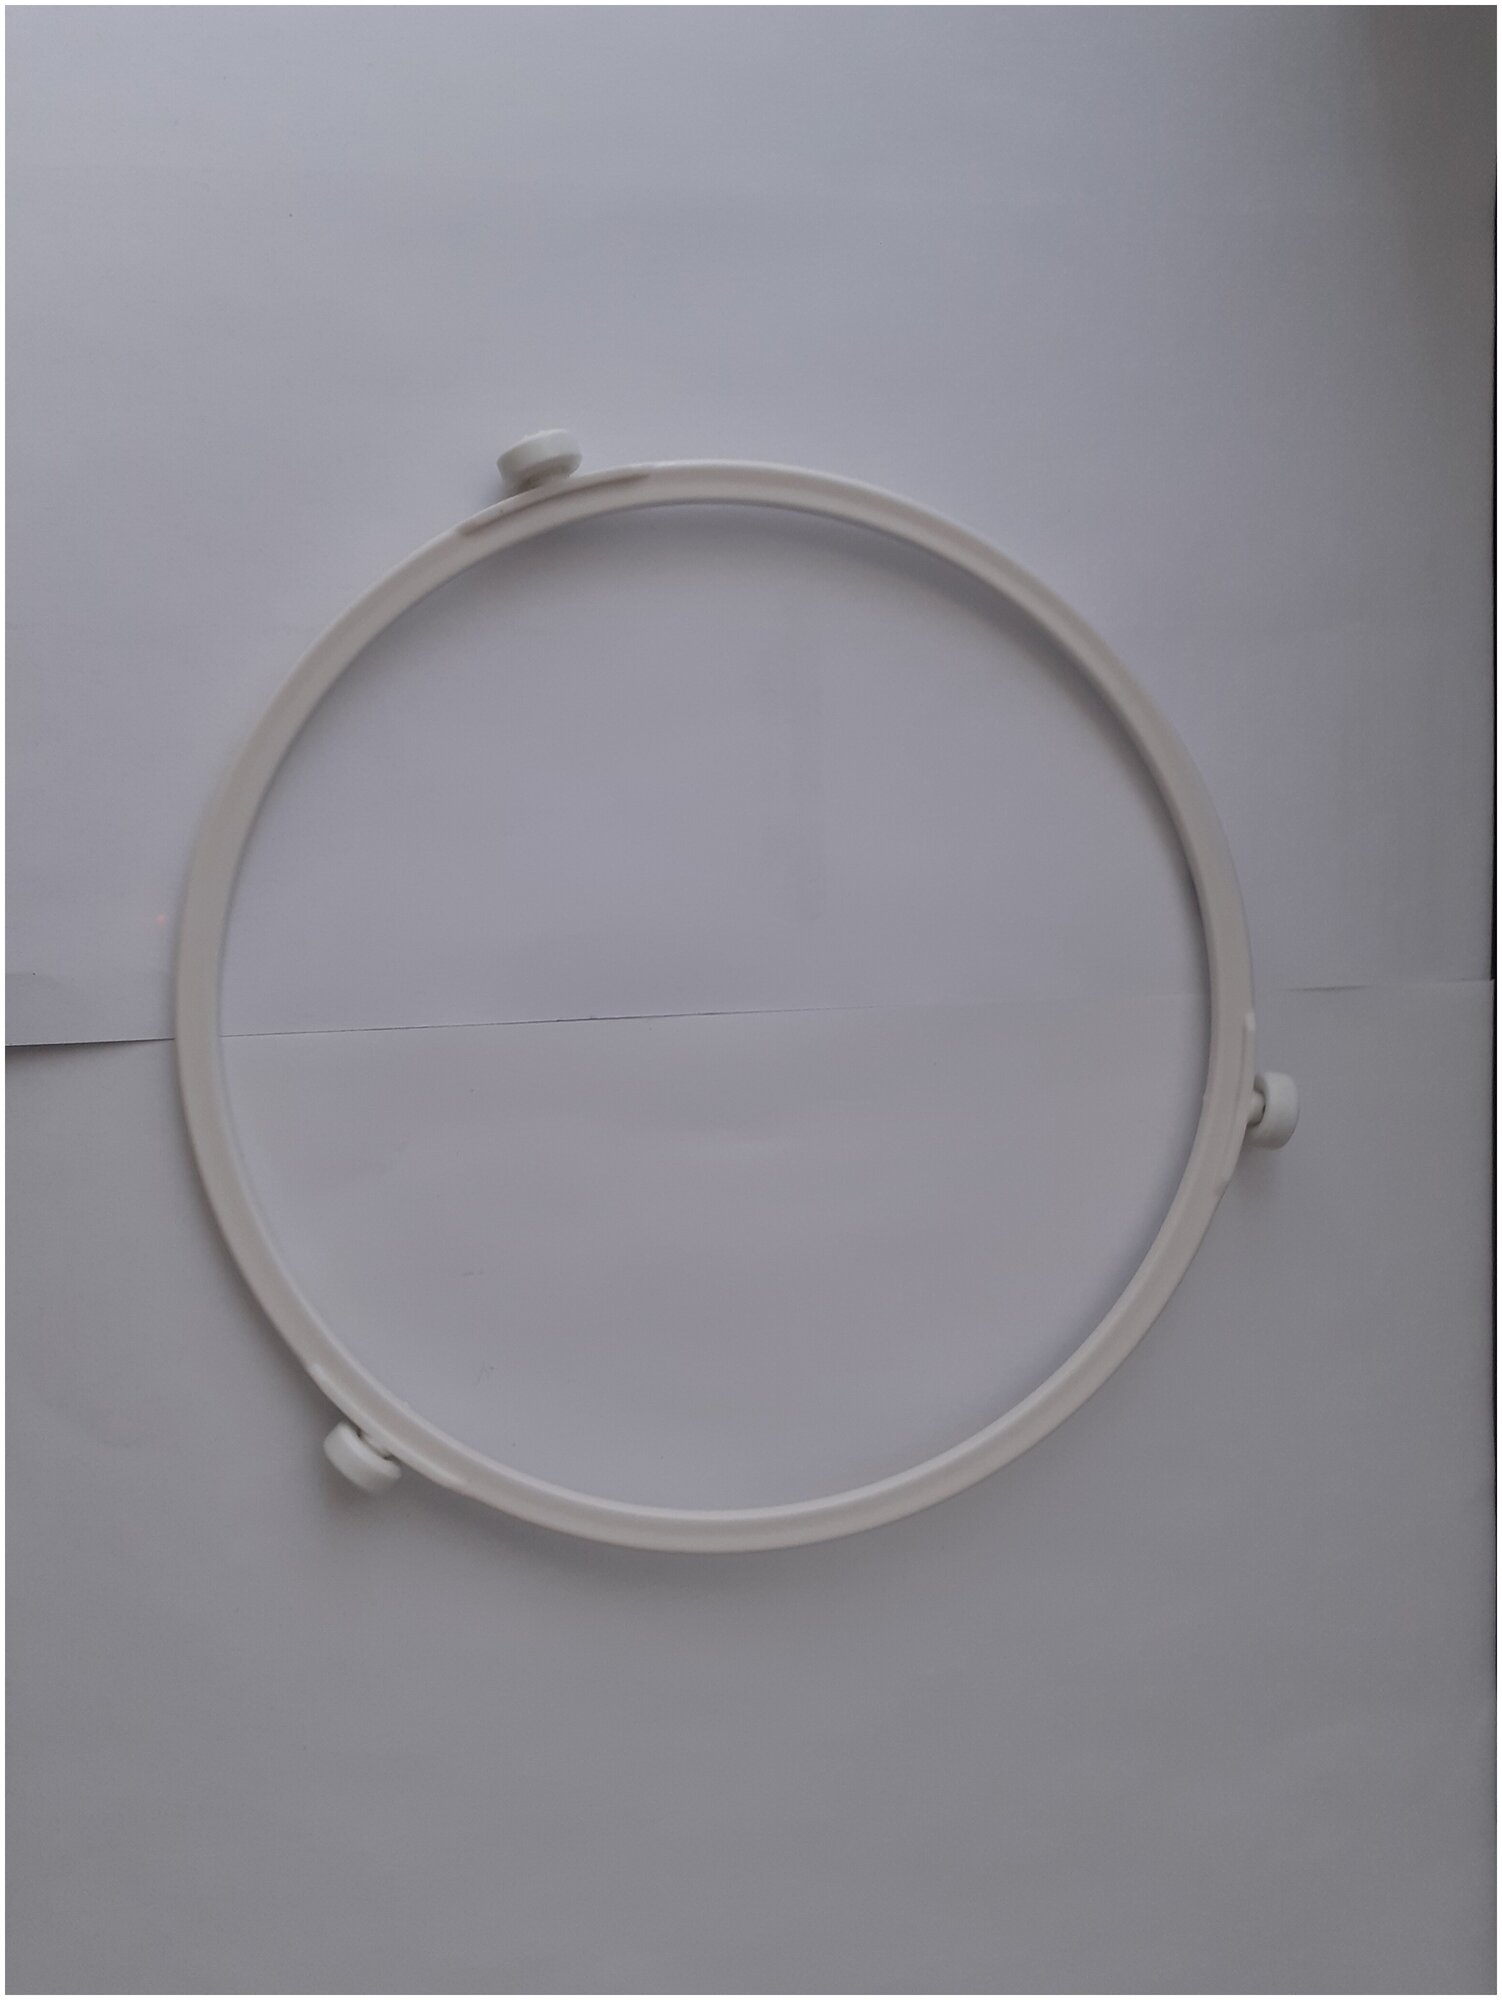 Кольцо вращения тарелки Eurokitchen для СВЧ-печи, диаметр кольца 190 мм, диаметр ролика 12 мм - фотография № 3